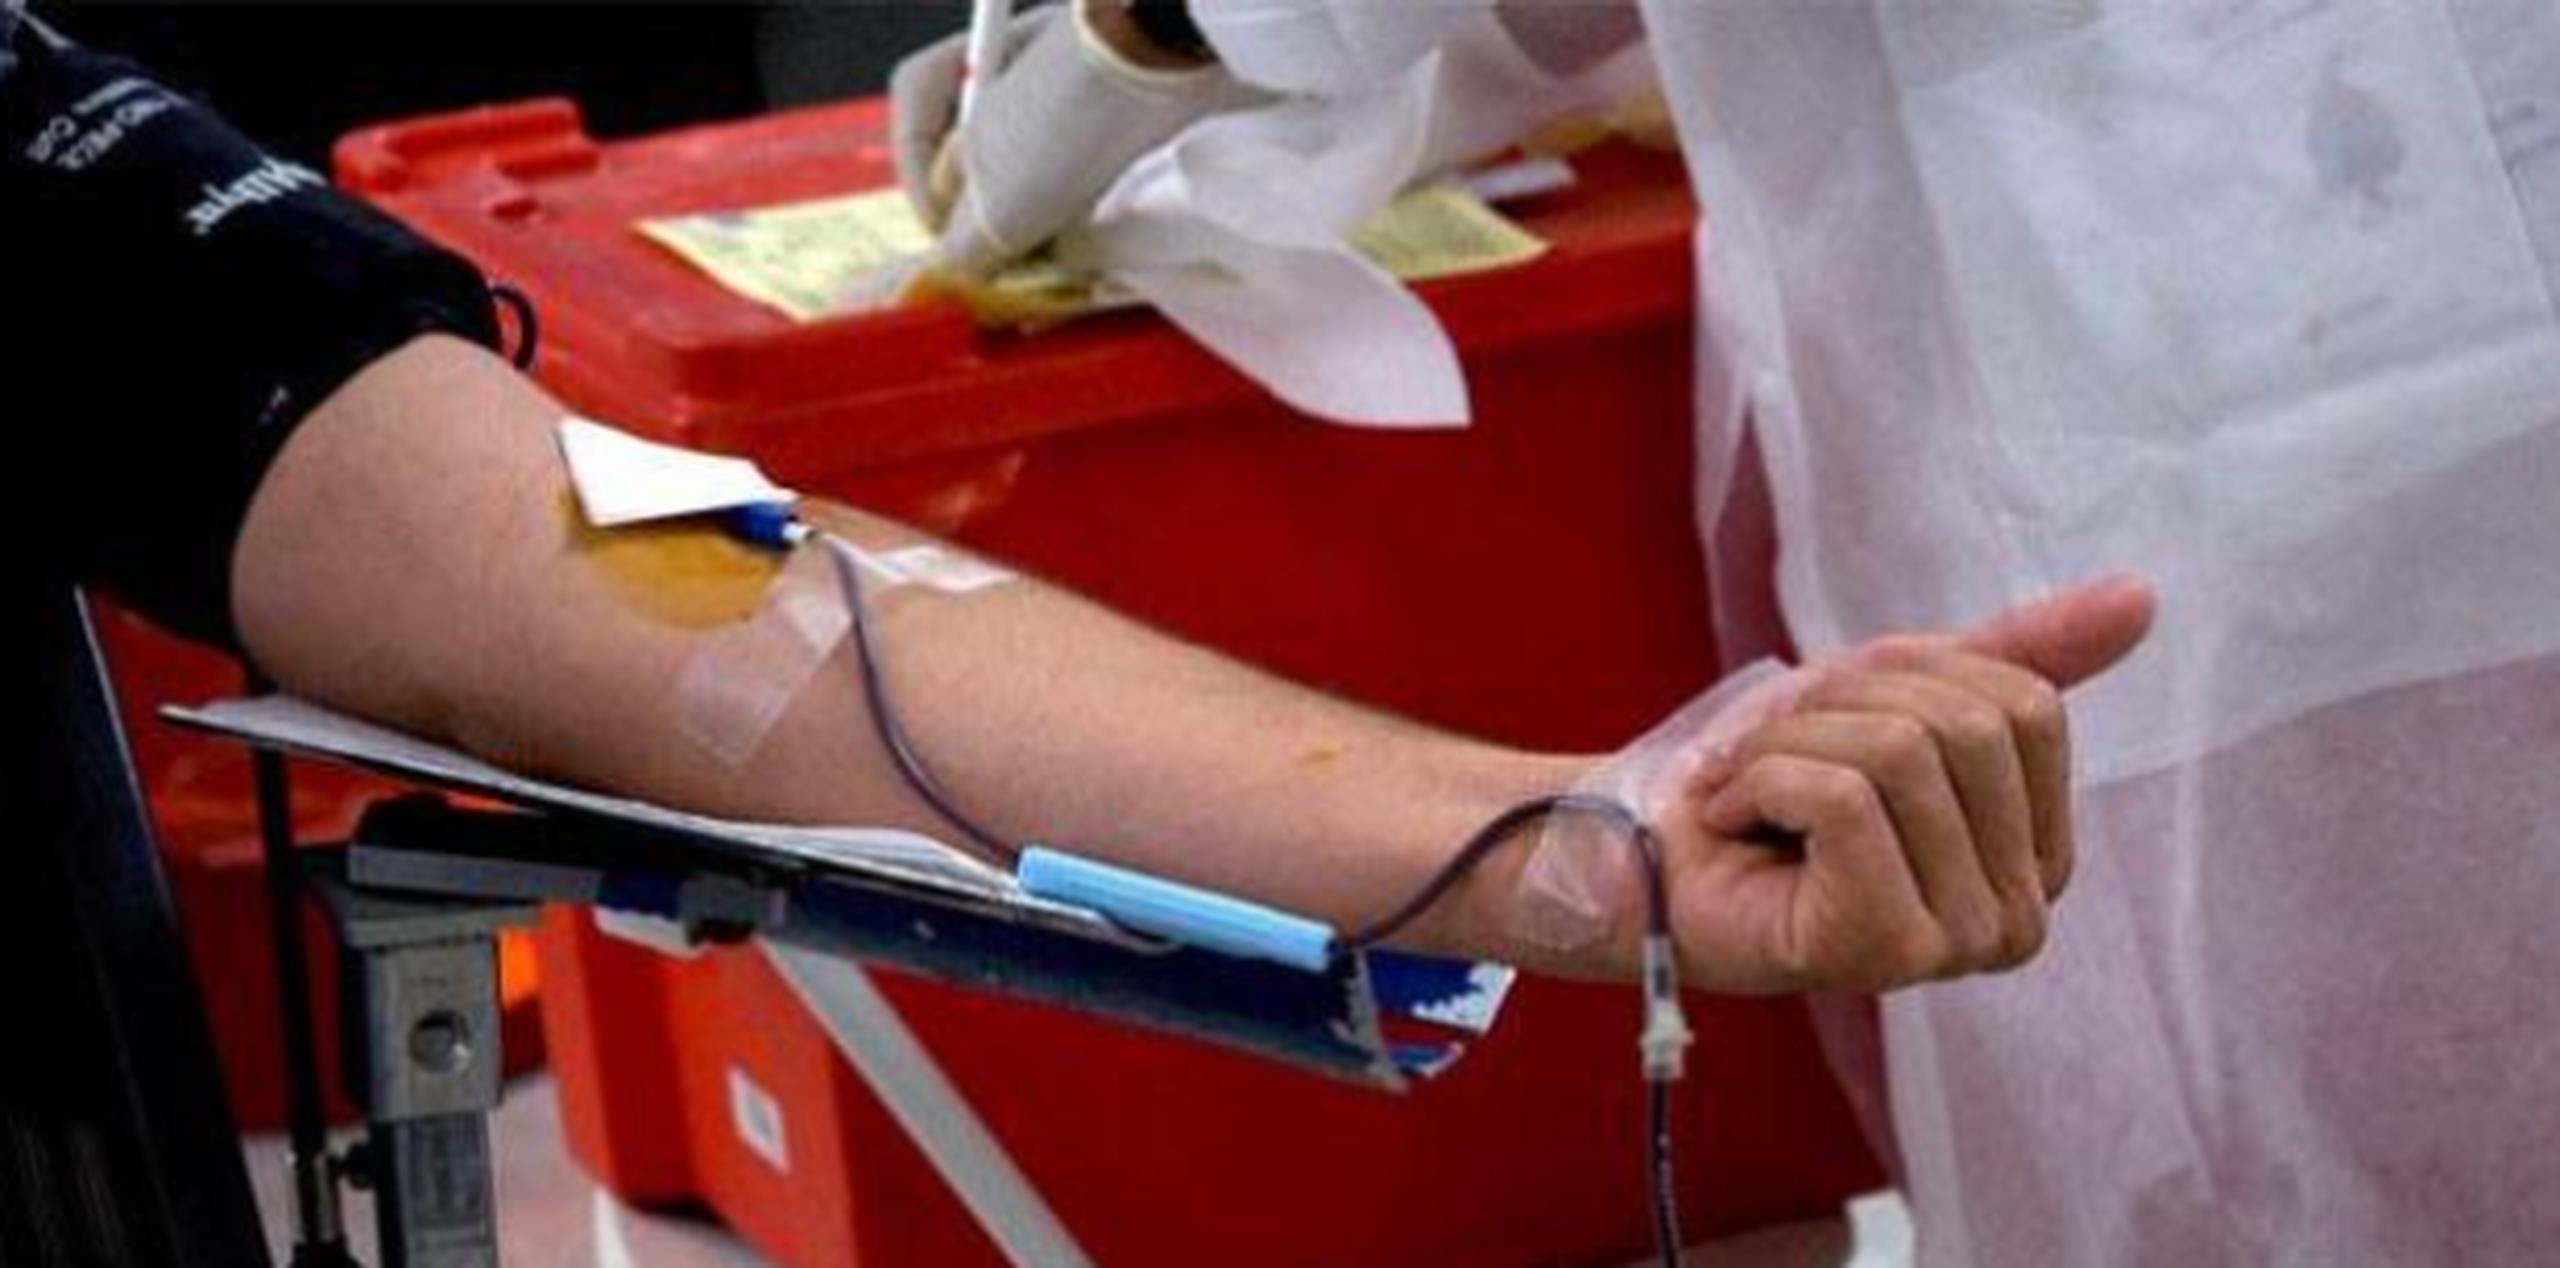 Esta mañana el Banco de Sangre no pudo suplir, por falta de disponibilidad, la cantidad de unidades de sangre que le solicitó uno de los seis hospitales de Centro Médico a los que sirven.  (Archivo)

